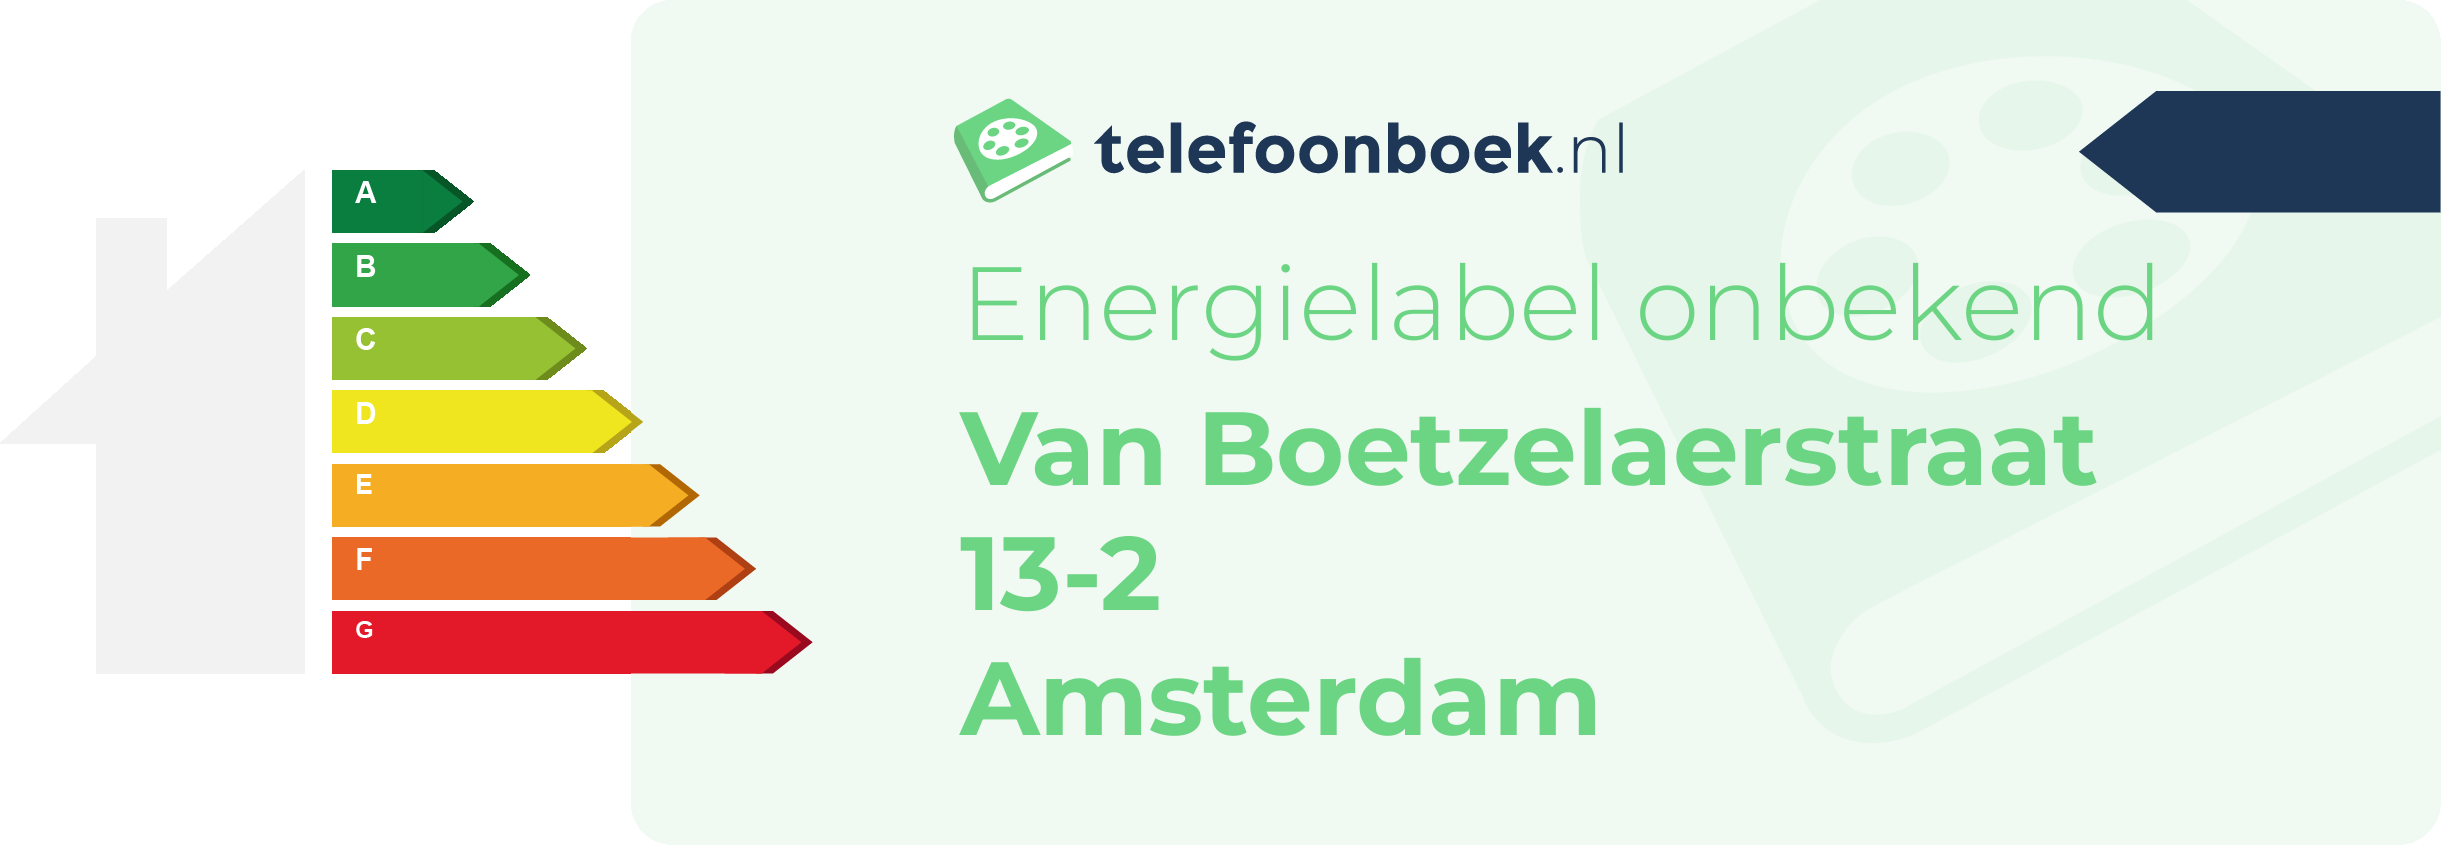 Energielabel Van Boetzelaerstraat 13-2 Amsterdam